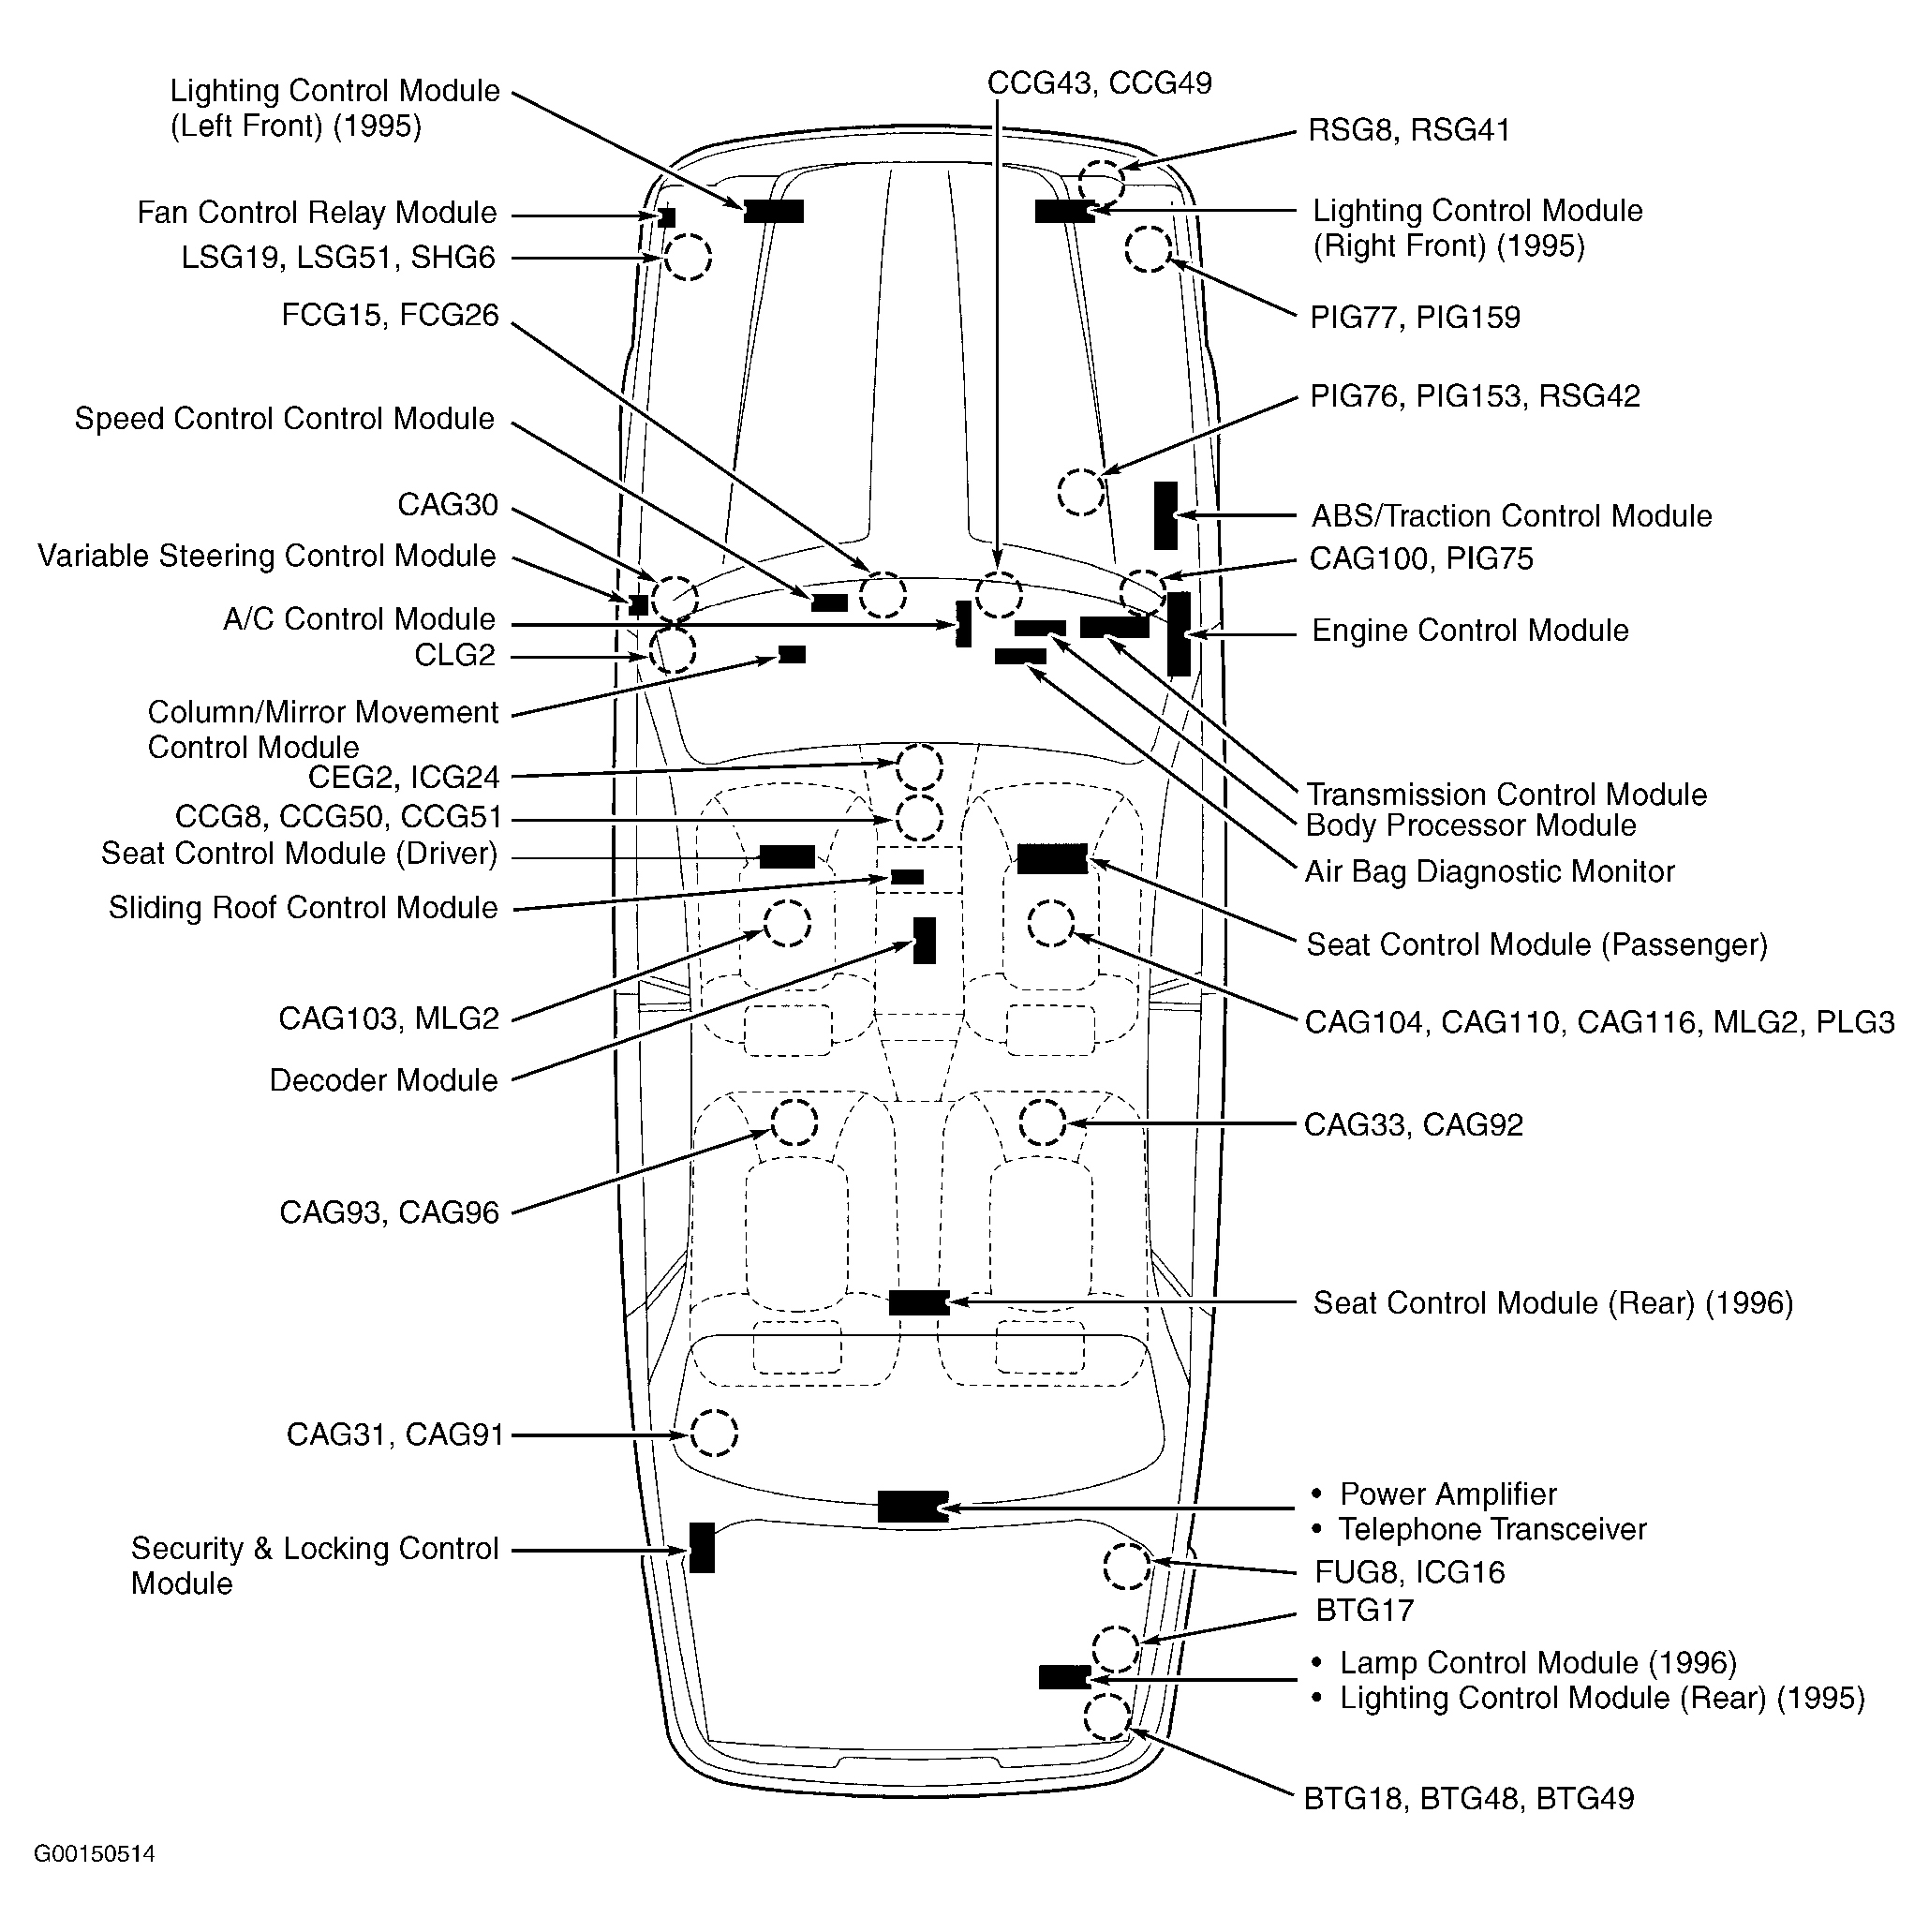 Jaguar XJ12 1995 - Component Locations -  Vehicle Overview